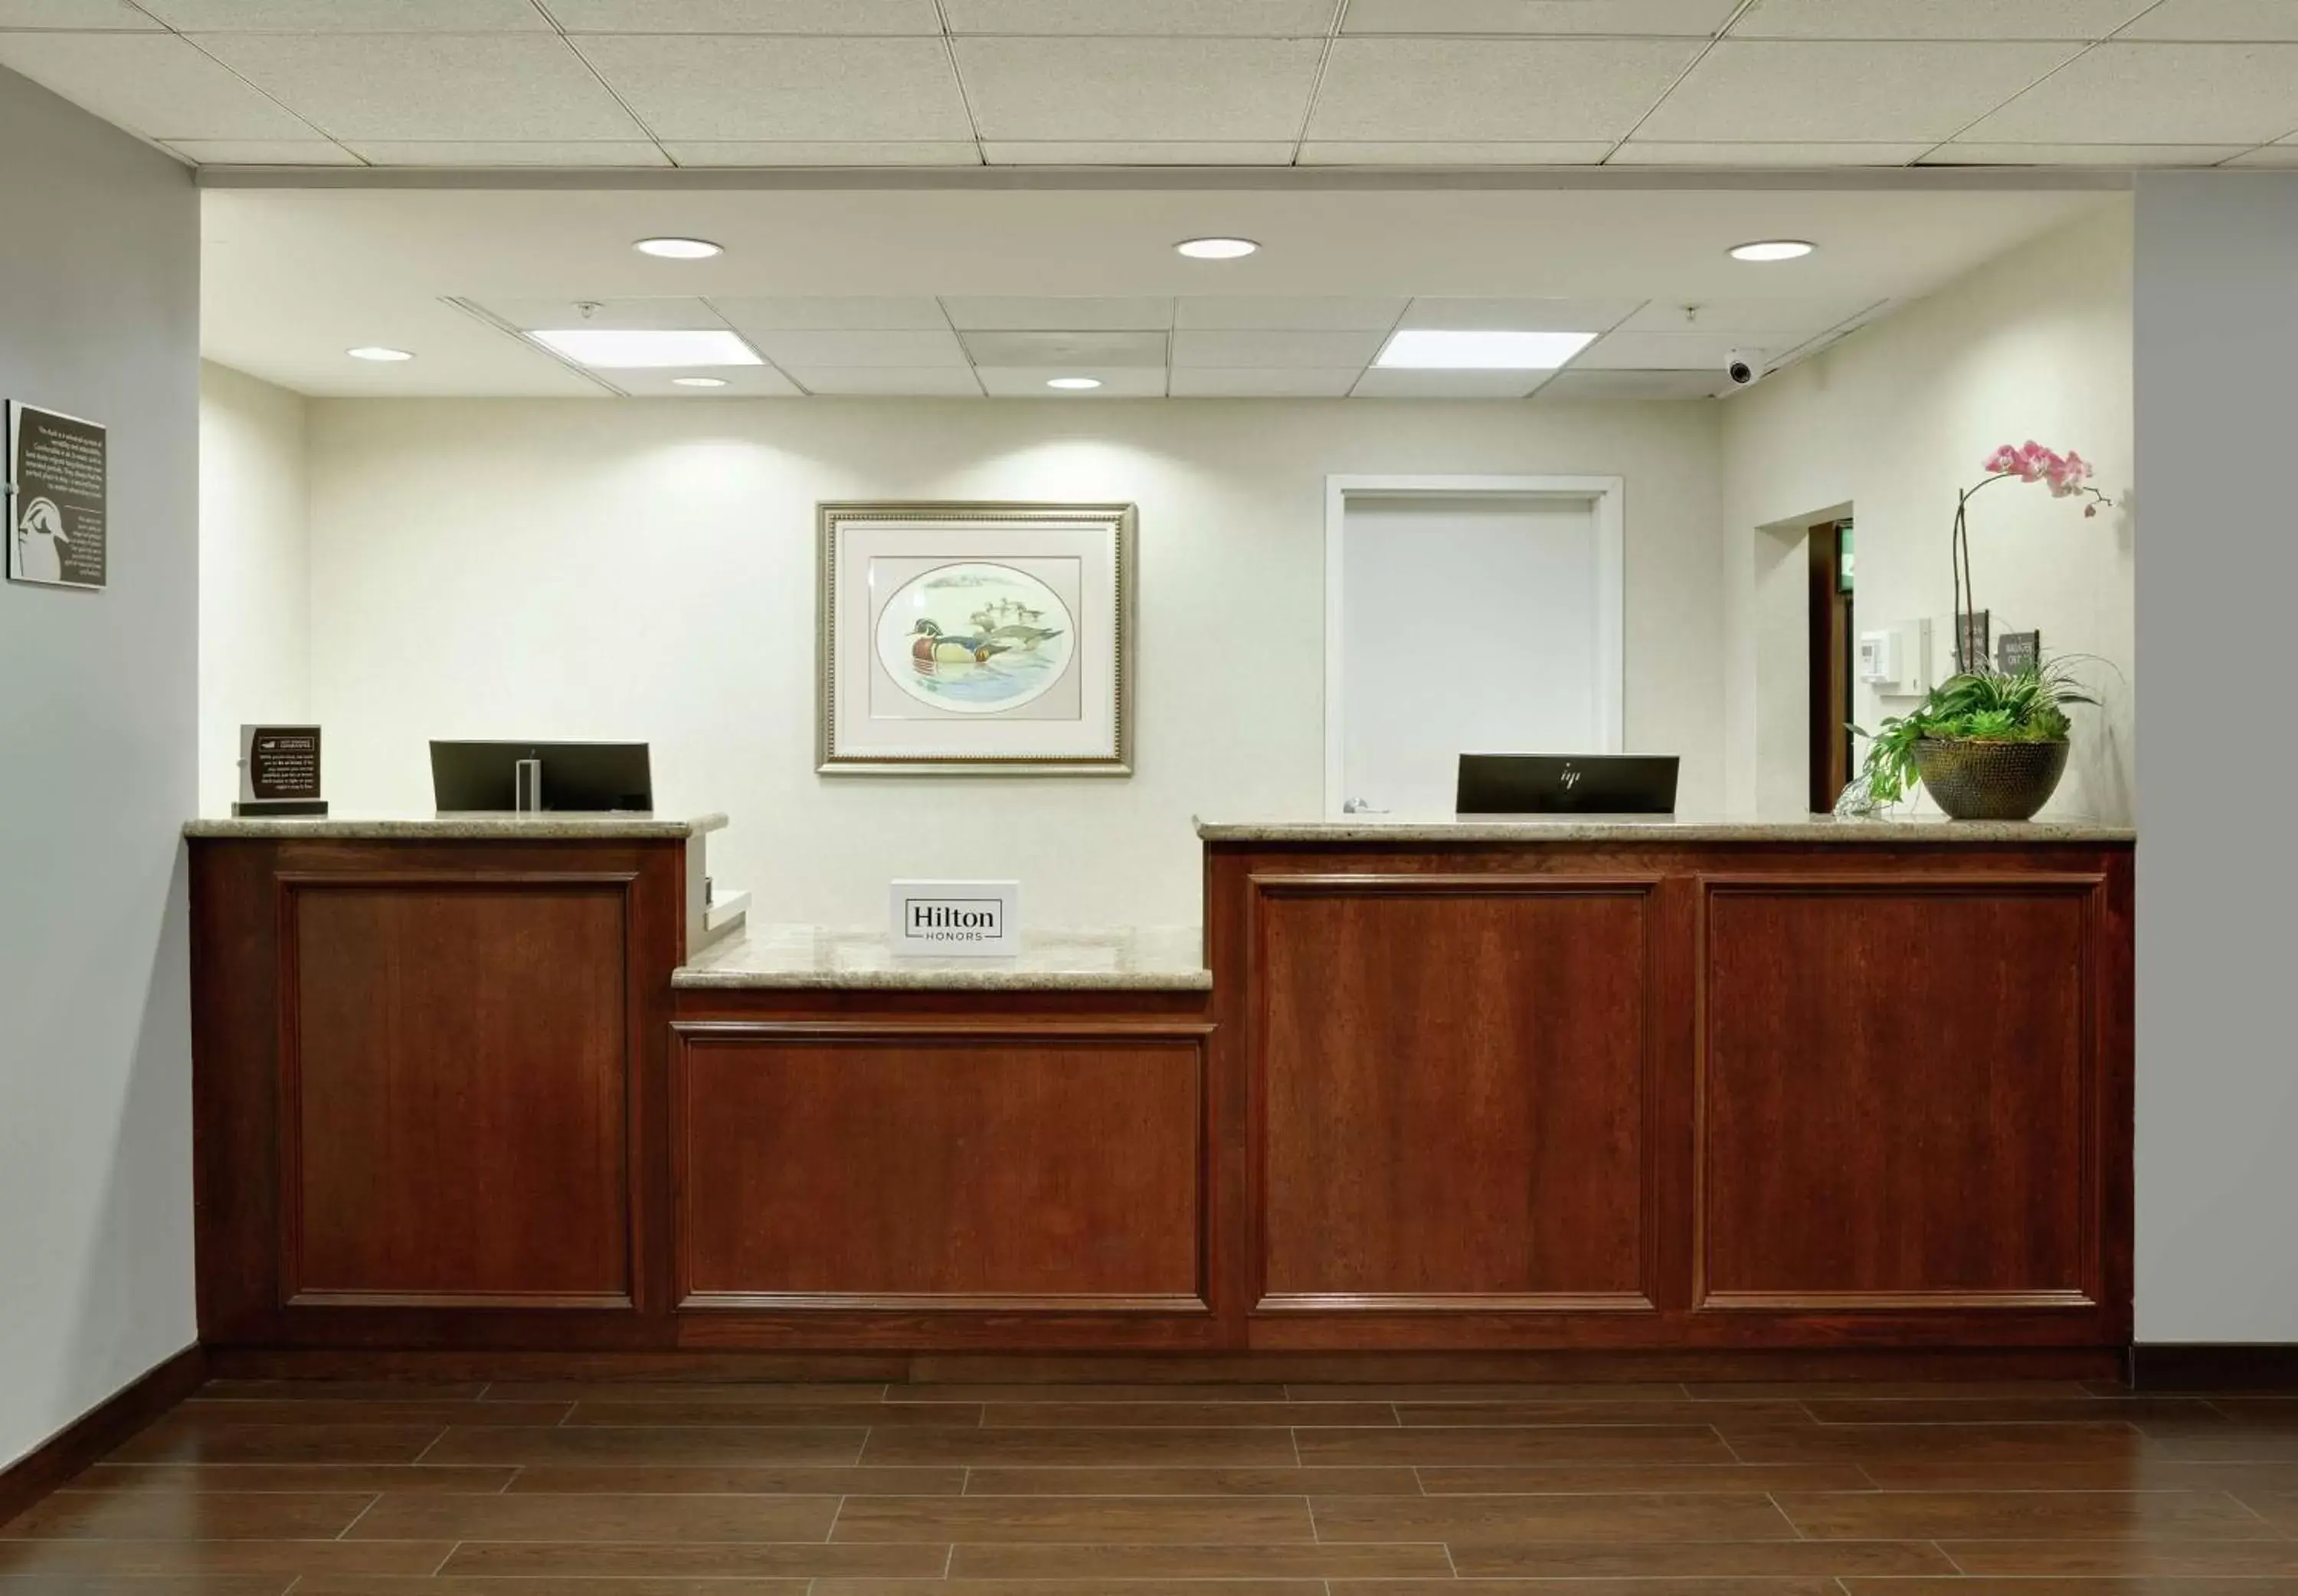 Lobby or reception, Lobby/Reception in Homewood Suites by Hilton San Diego-Del Mar